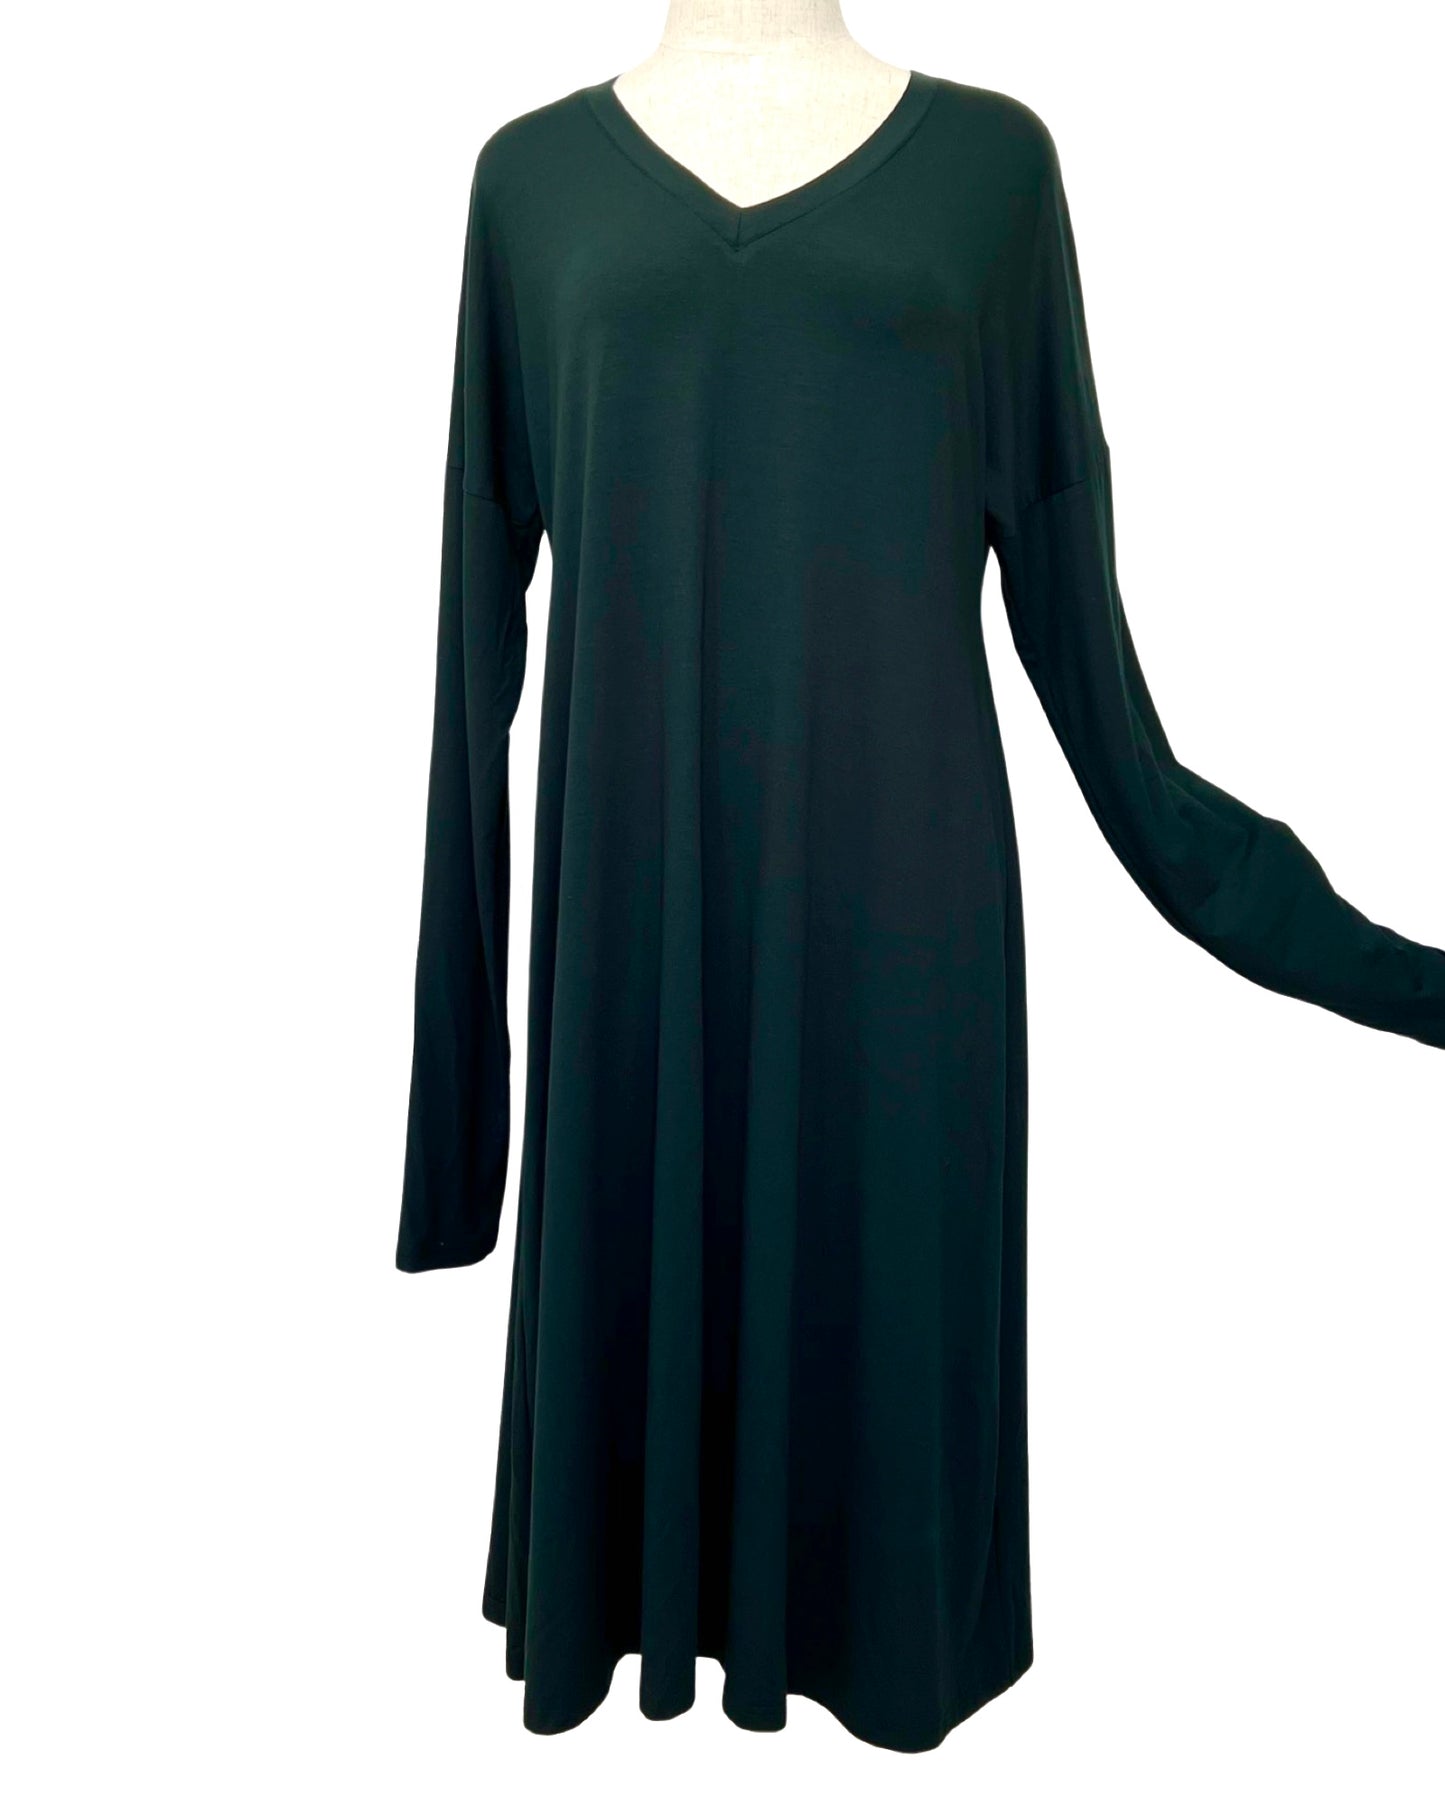 Victoria Dress - Deep Green - Size 14